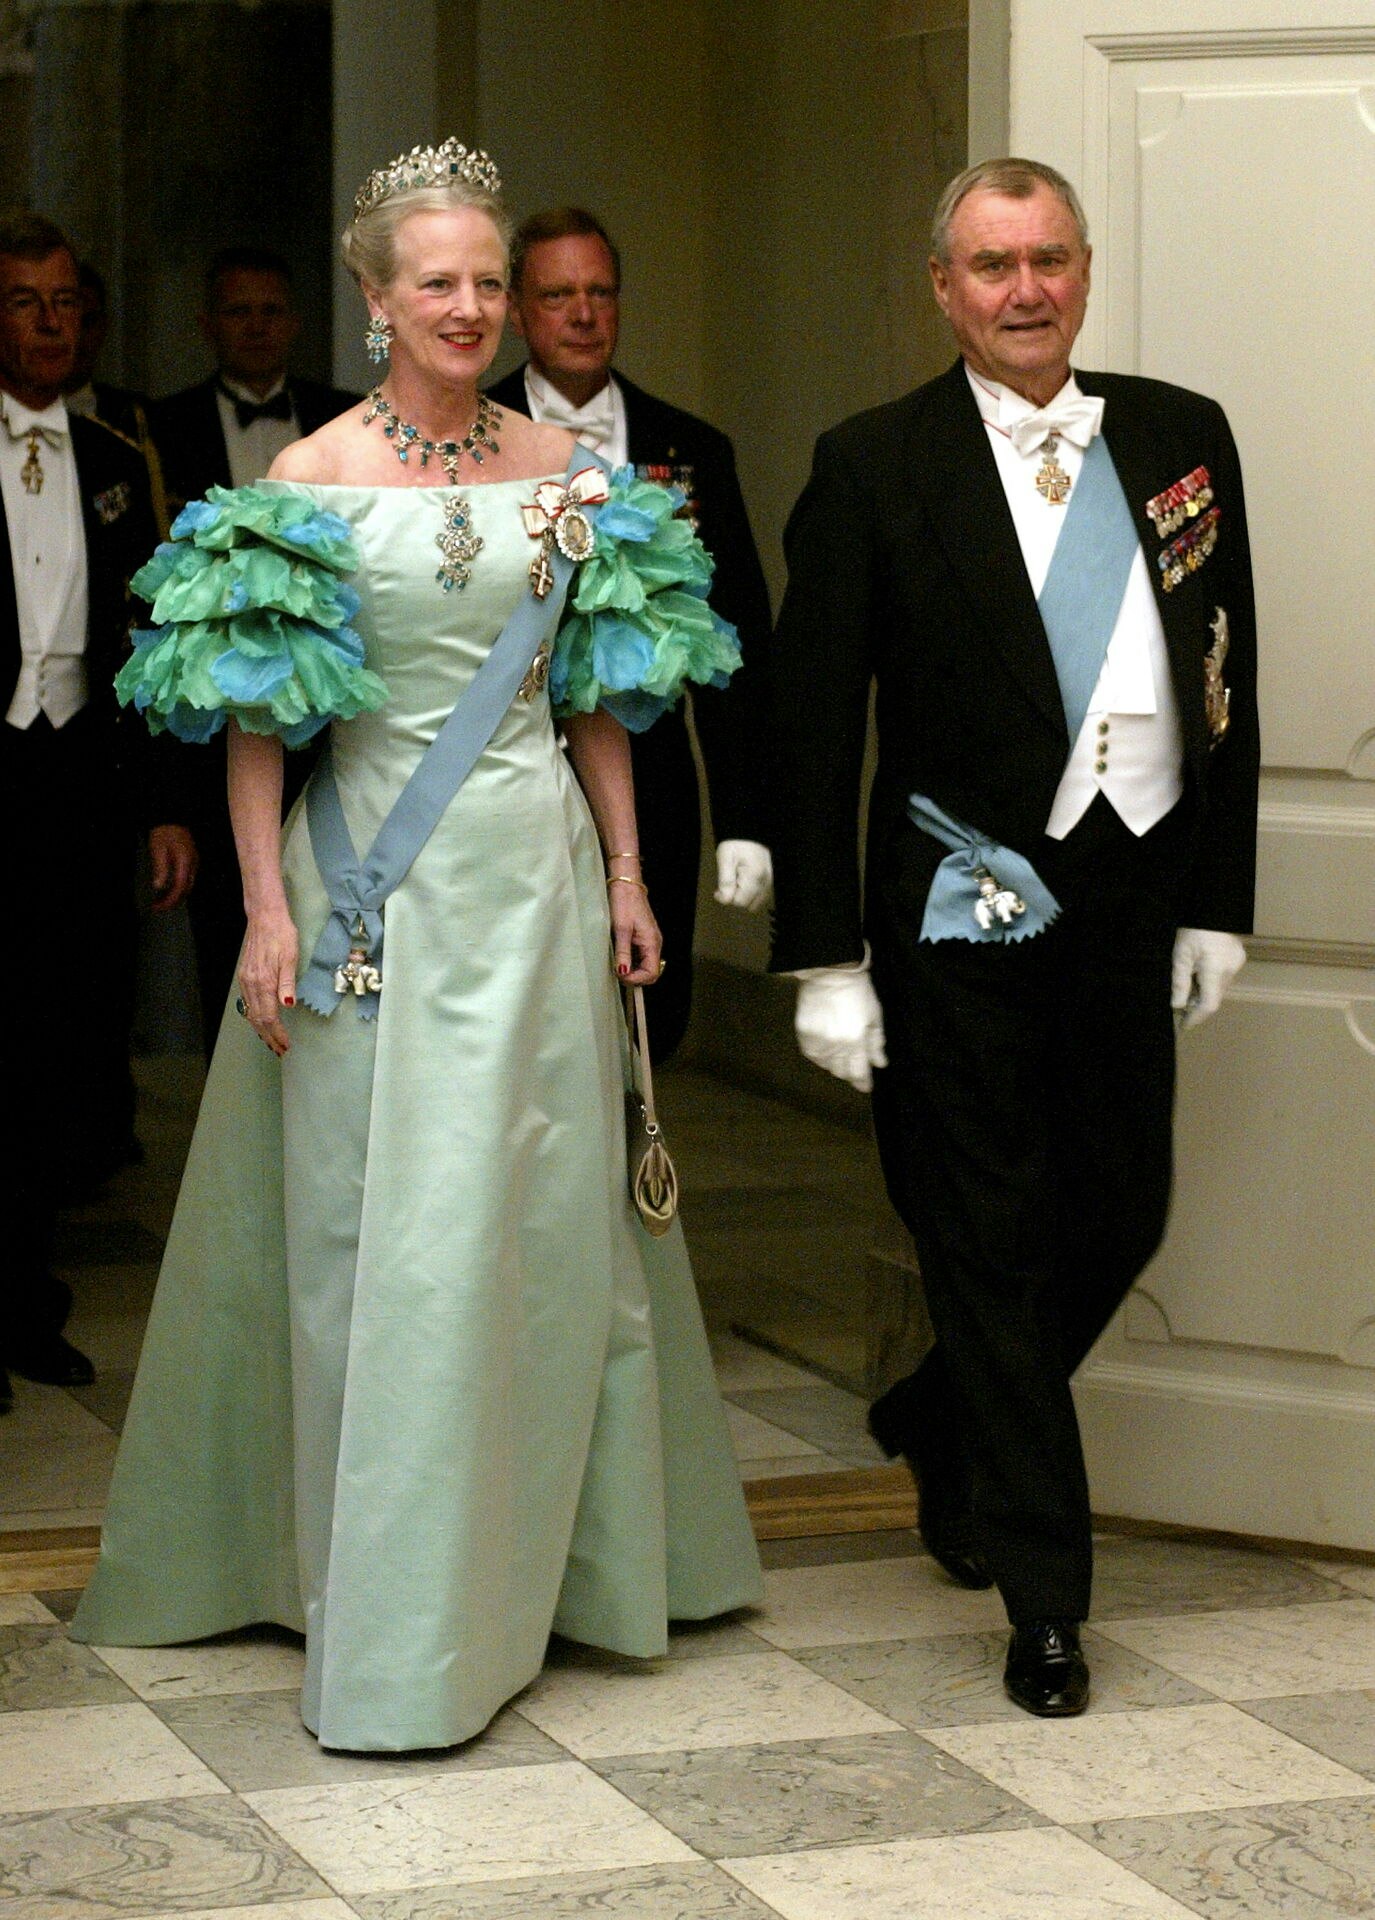 Dronning Margrethe og Prins Henrik ankommer til gallamiddag på Christiansborg i anledning af det forestående royale bryllup.